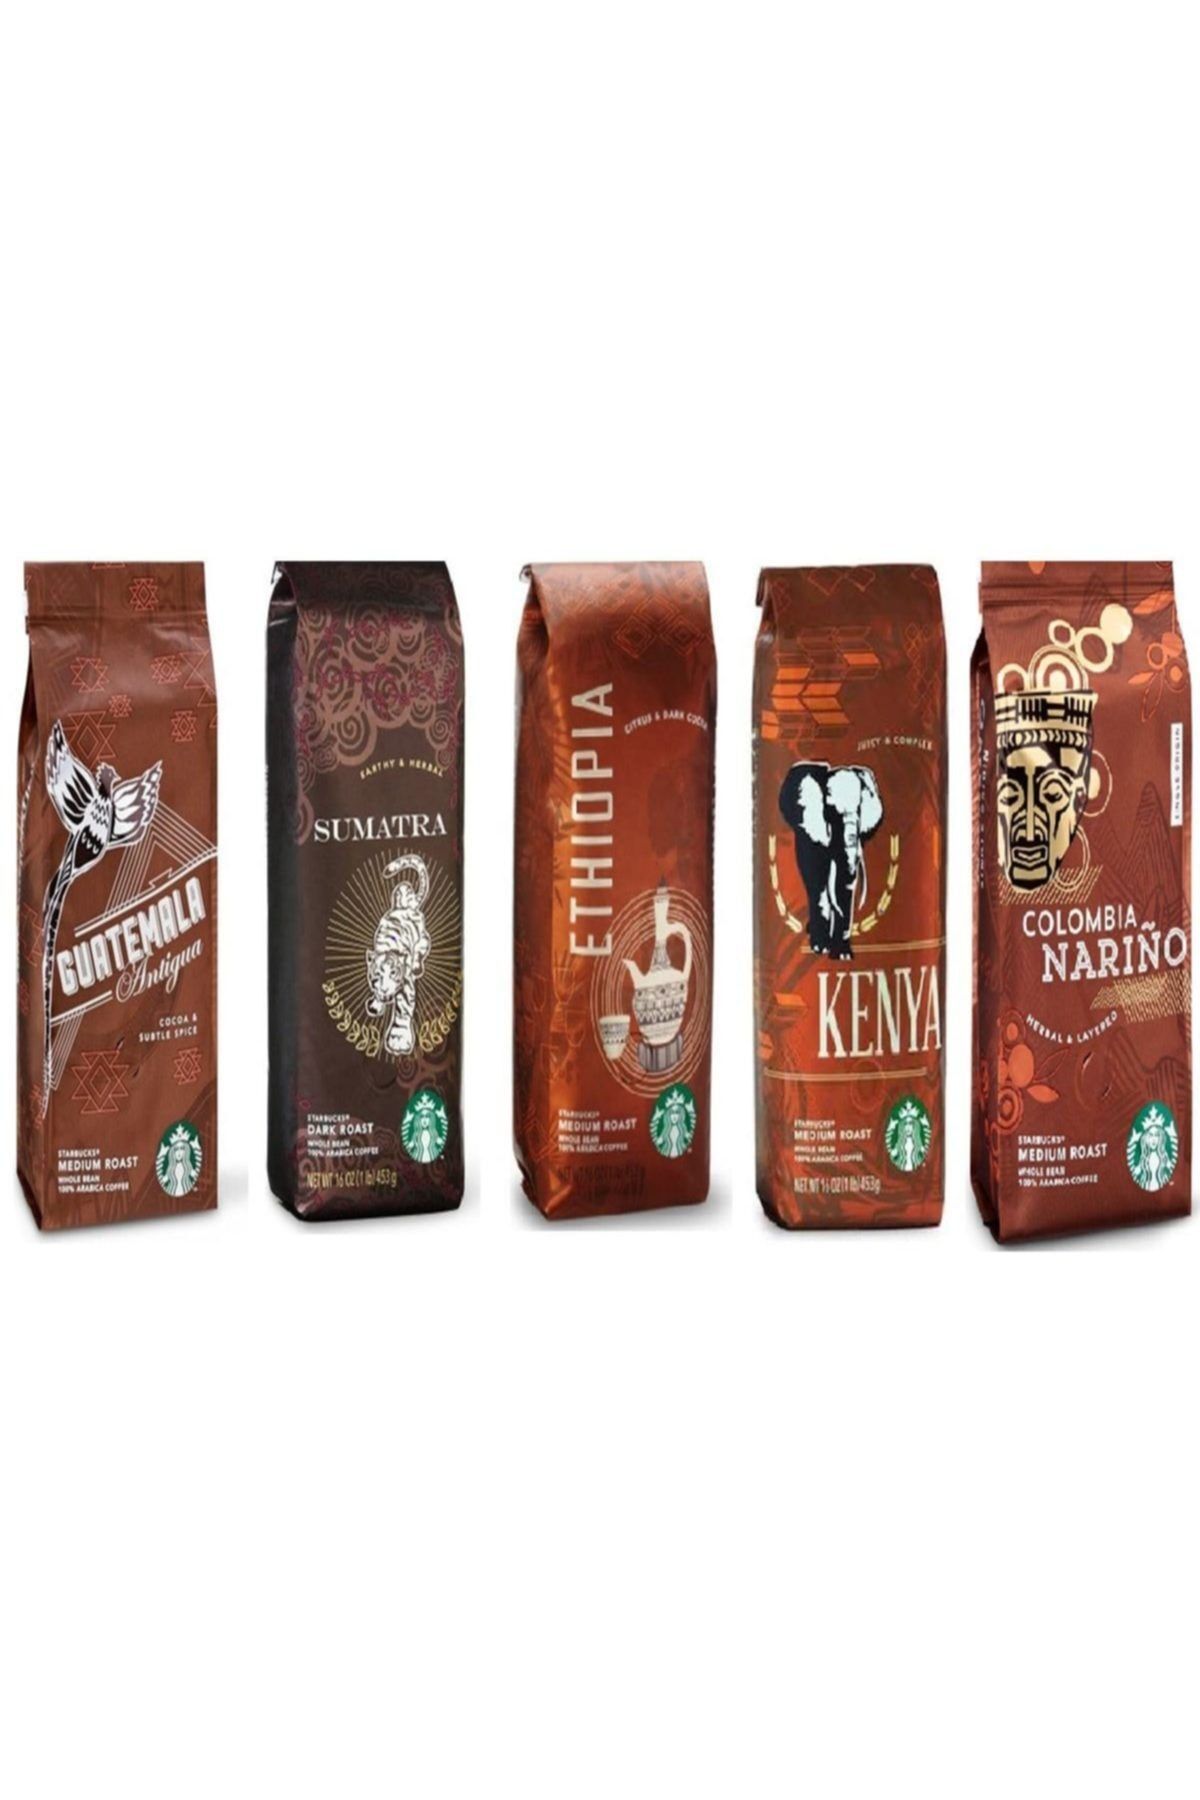 Starbucks Deneme Paketi Filtre Kahve 5x250 gr 5 Paket Kahve Makinası İçin Çekilmiş